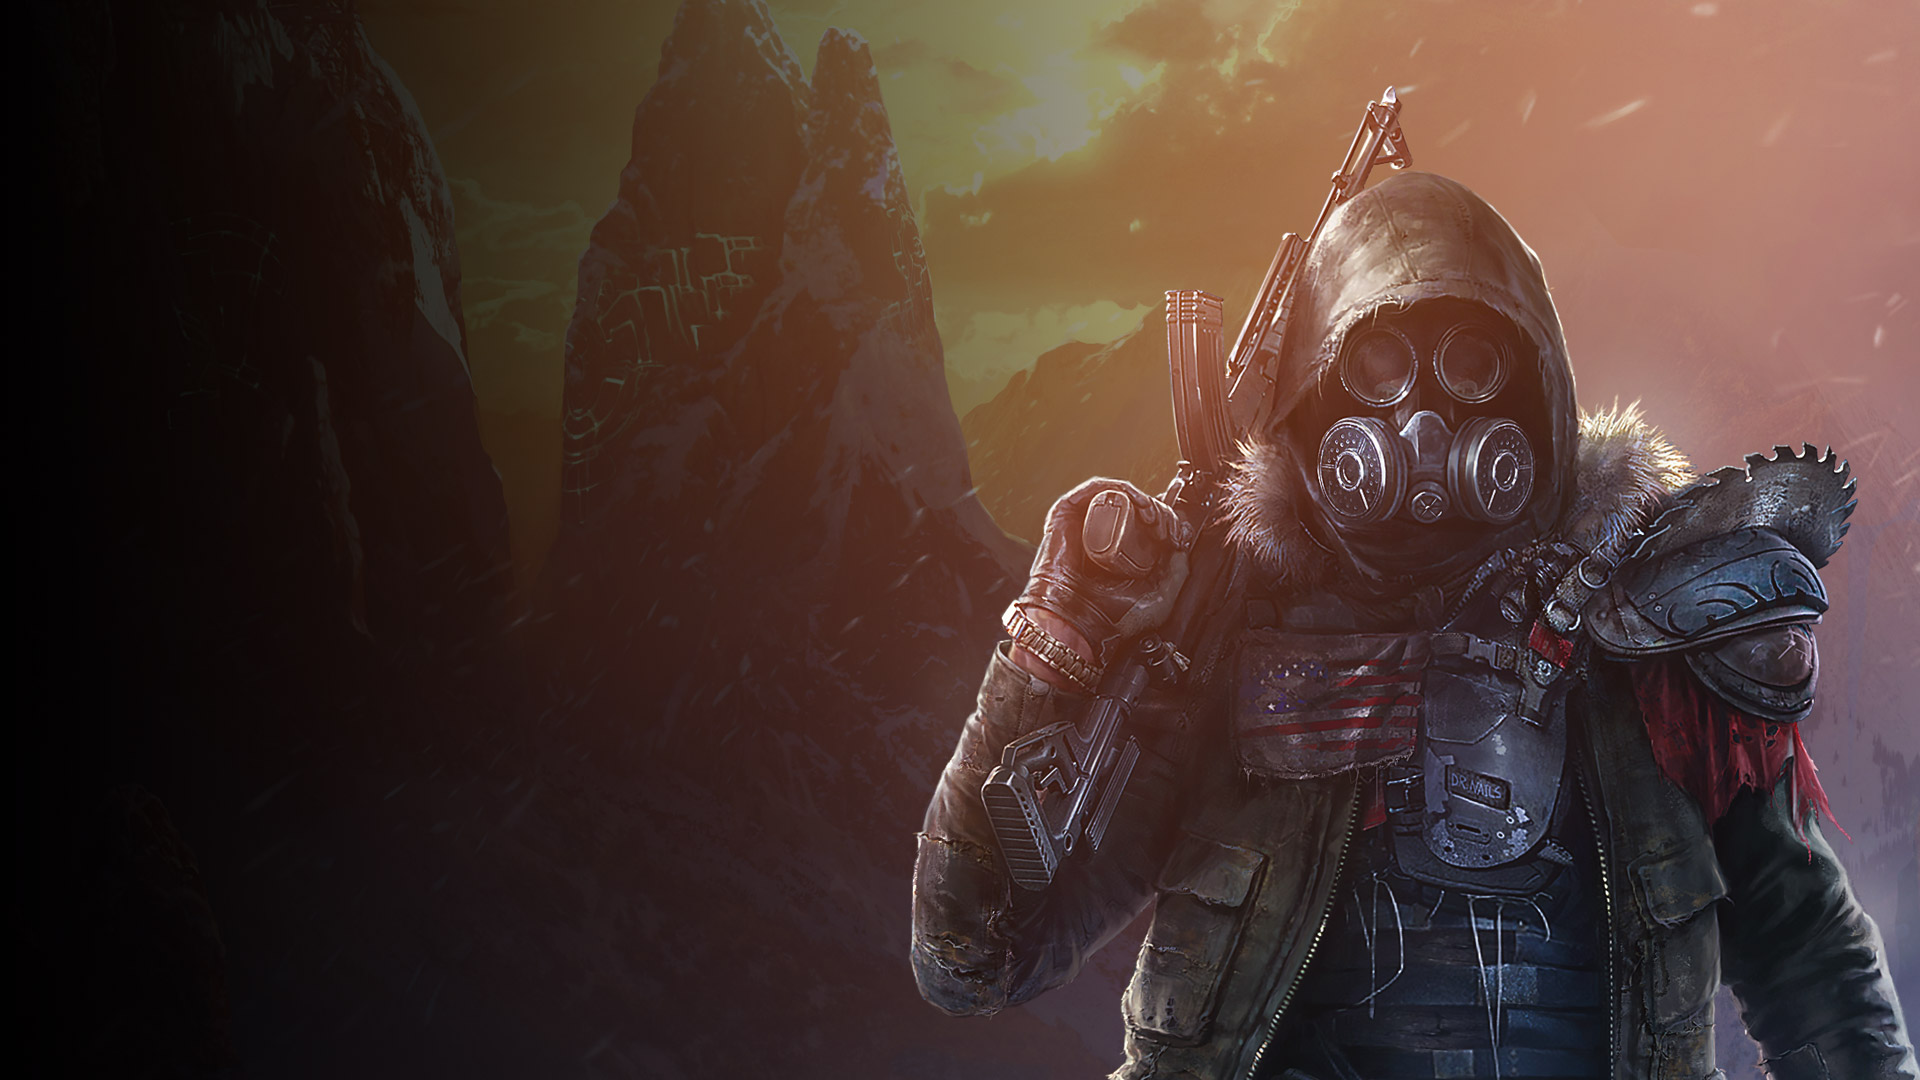 Postava z hry Wasteland 3 v brnení a maske držiaca zbraň